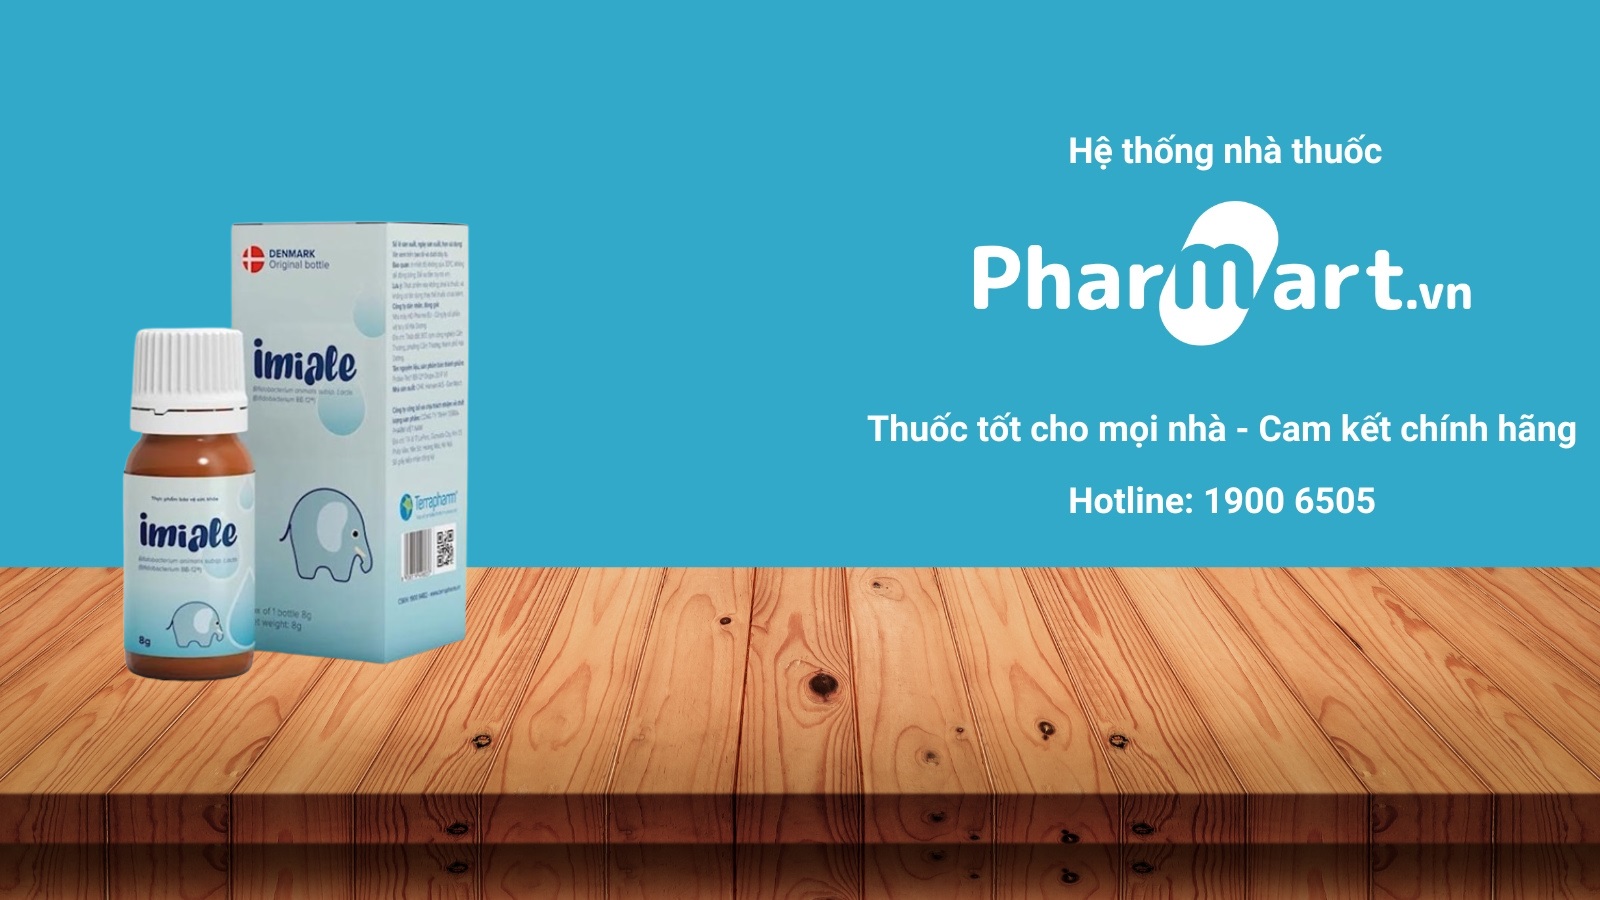 Mua sản phẩm men vi sinh Imiale chính hãng tại Pharmart.vn